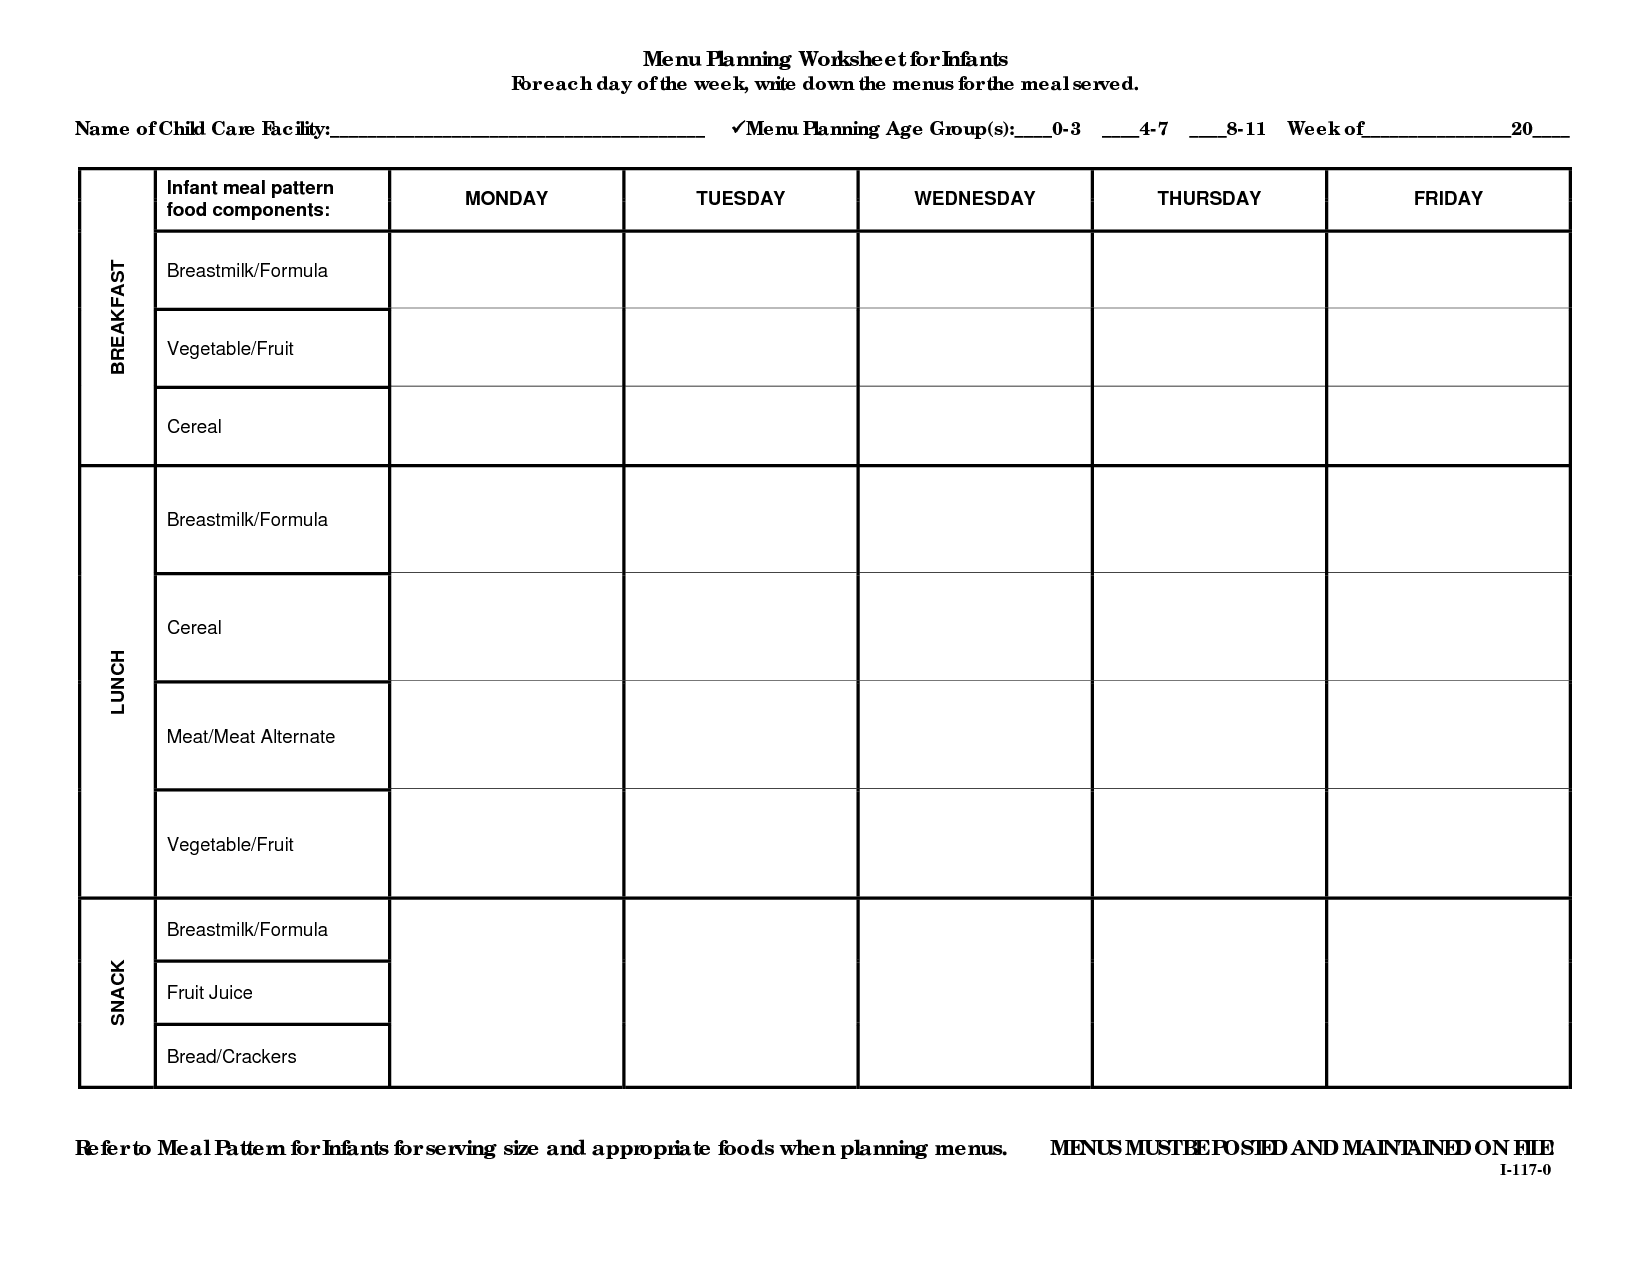 Menu Planning Worksheet Image